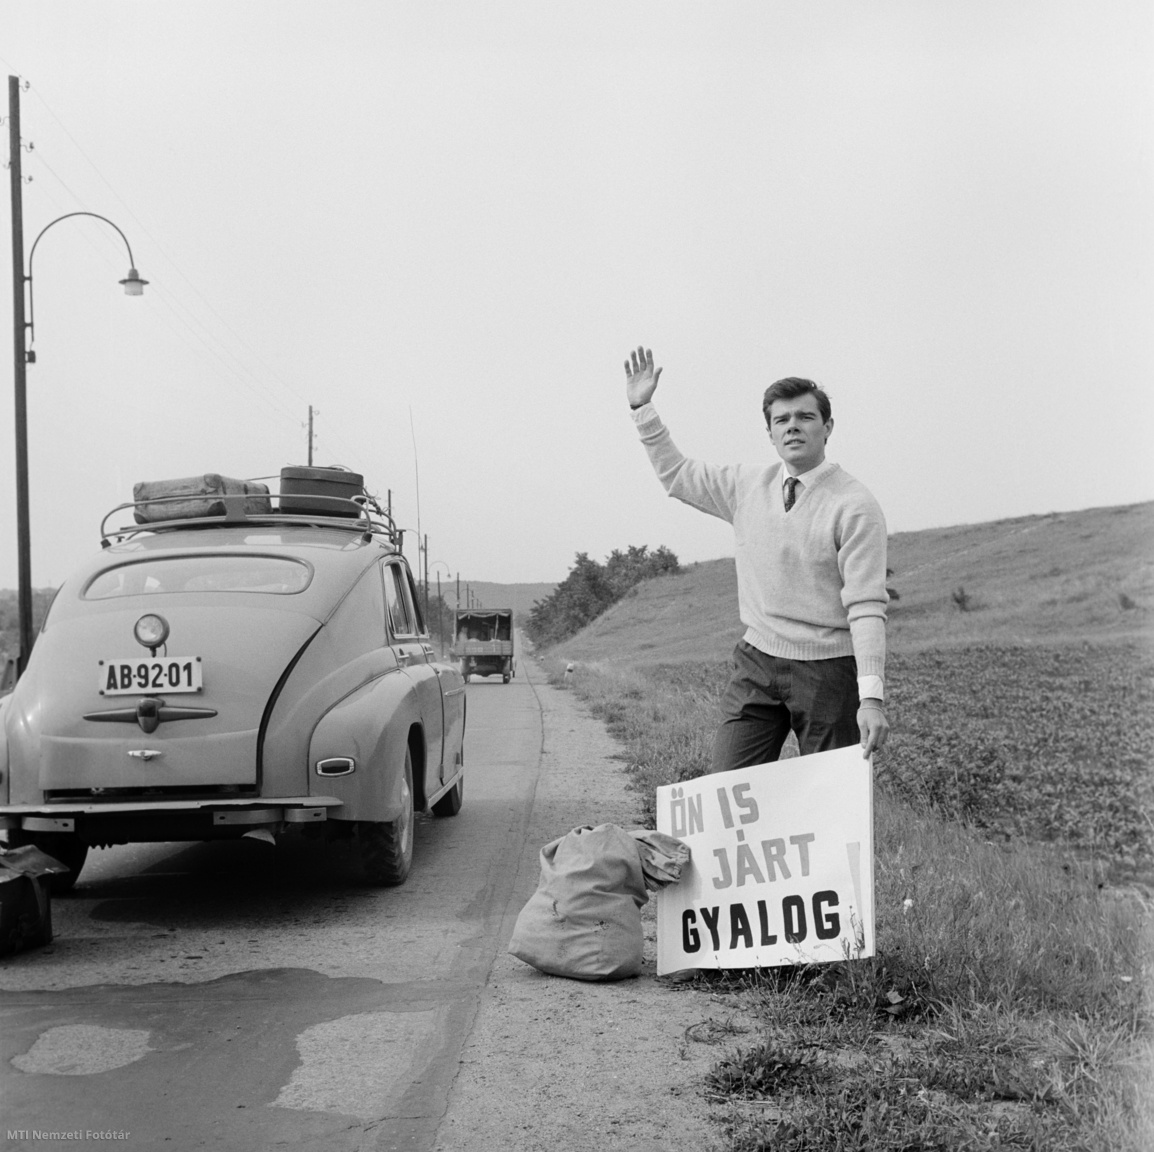 Magyarország, 1962. július 1. Tovább utazásához autókat próbál lestoppolni egy férfi az országút széléről, egy Ön is járt gyalog feliratú tábla segítségével. A felvétel készítésének pontos helye ismeretlen.